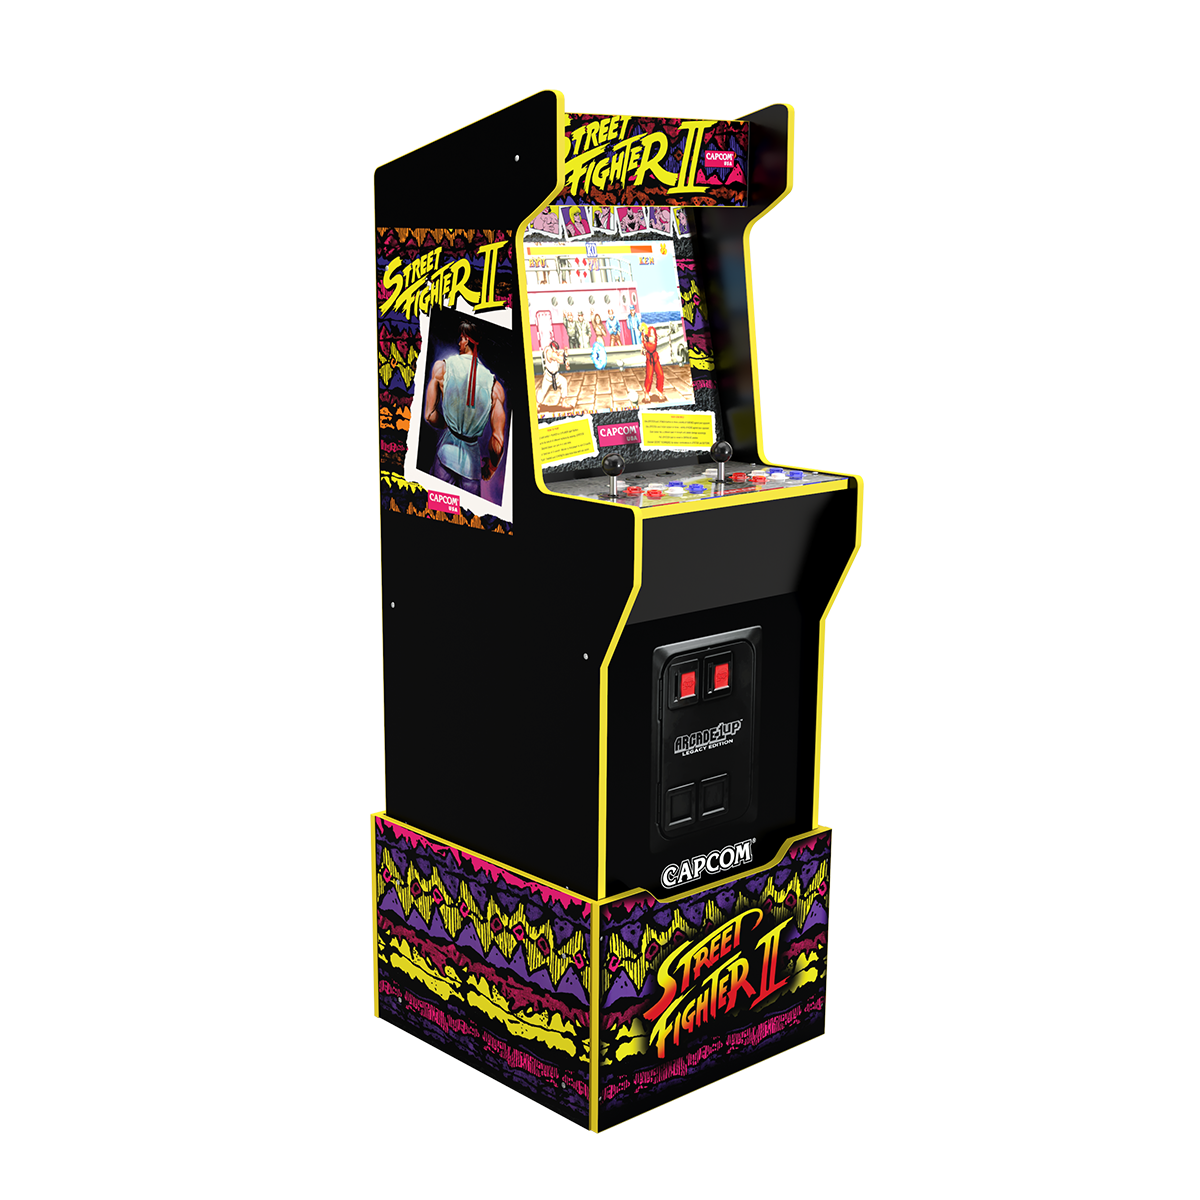 Arcade1Up Capcom Legacy